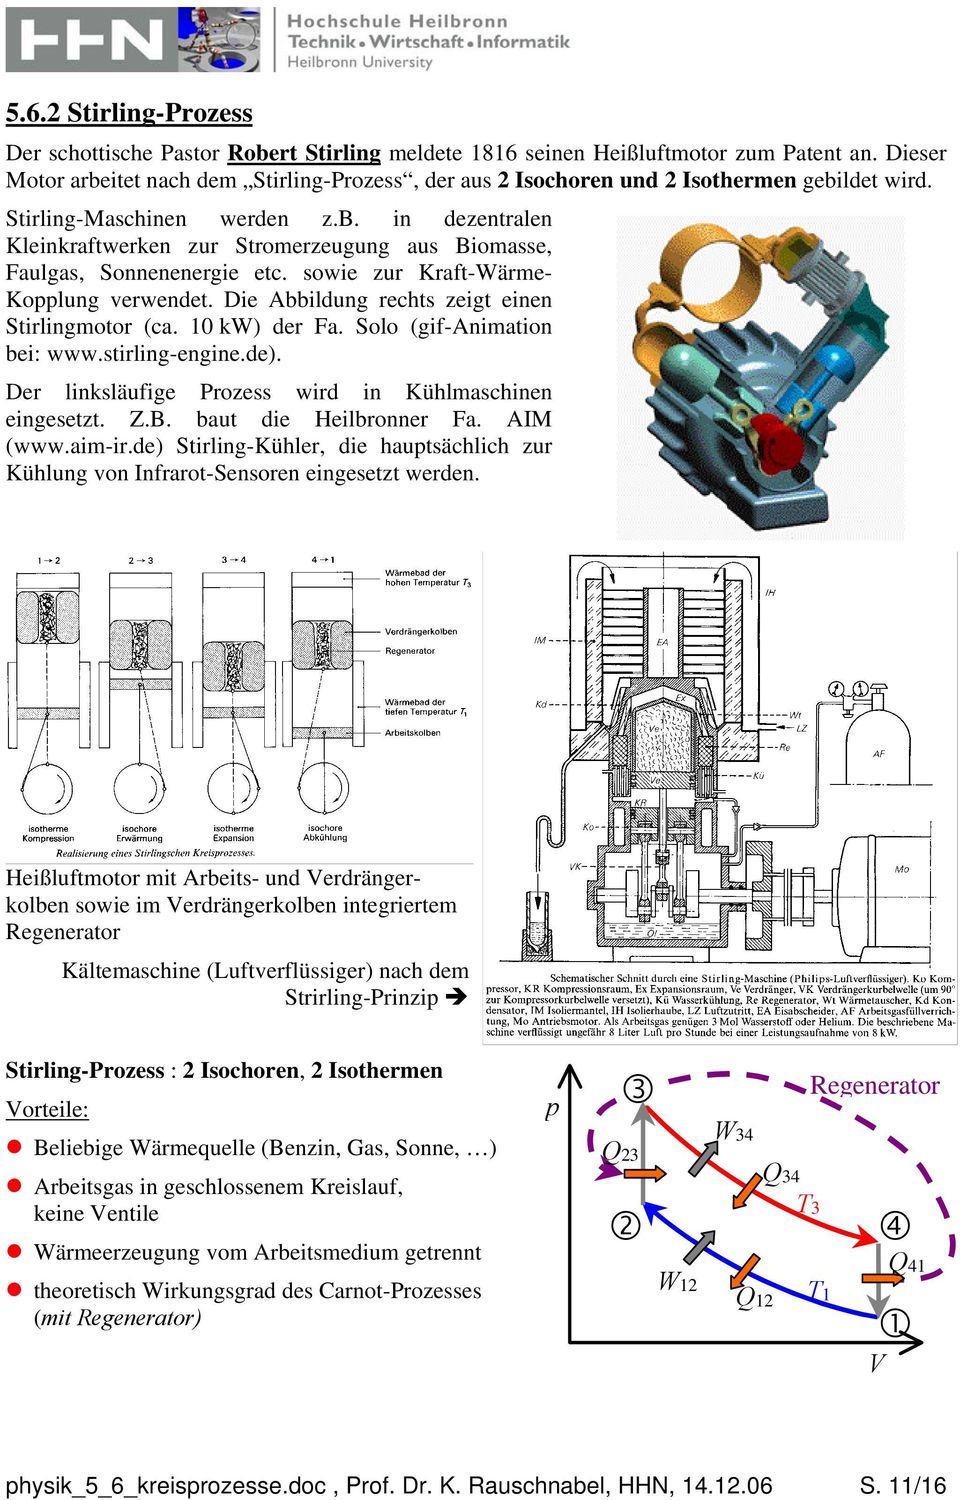 Die Abbildung rechts zeigt einen Stirlingotor (ca. 0 k) der Fa. Solo (gif-aniation bei: www.stirling-engine.de). Der linksläufige Prozess wird in Kühlaschinen eingesetzt. Z.B. baut die Heilbronner Fa.